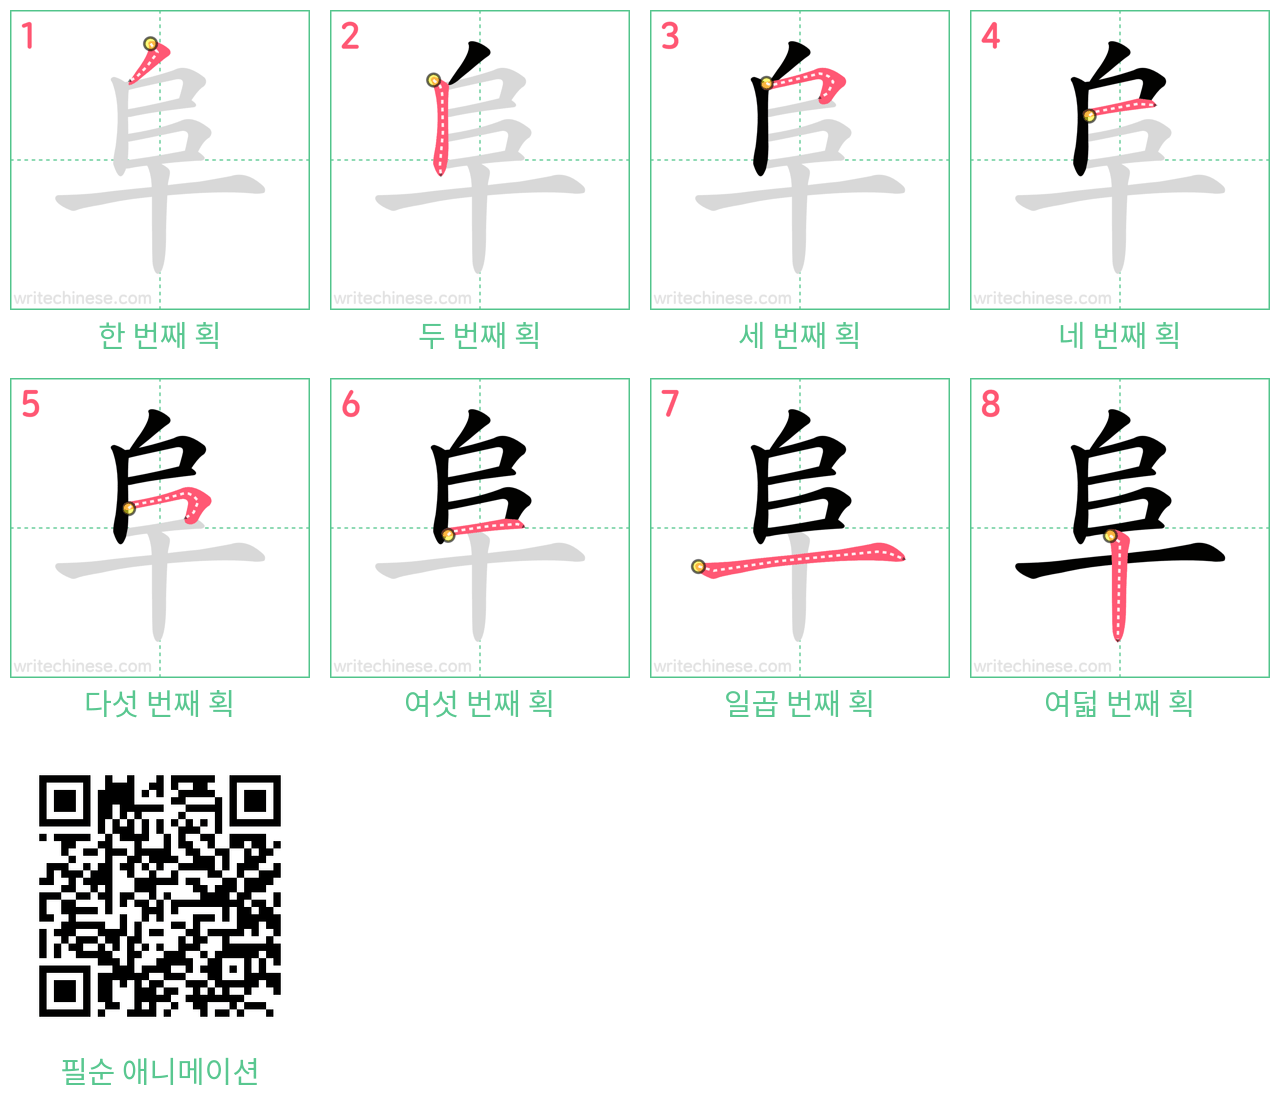 阜 step-by-step stroke order diagrams